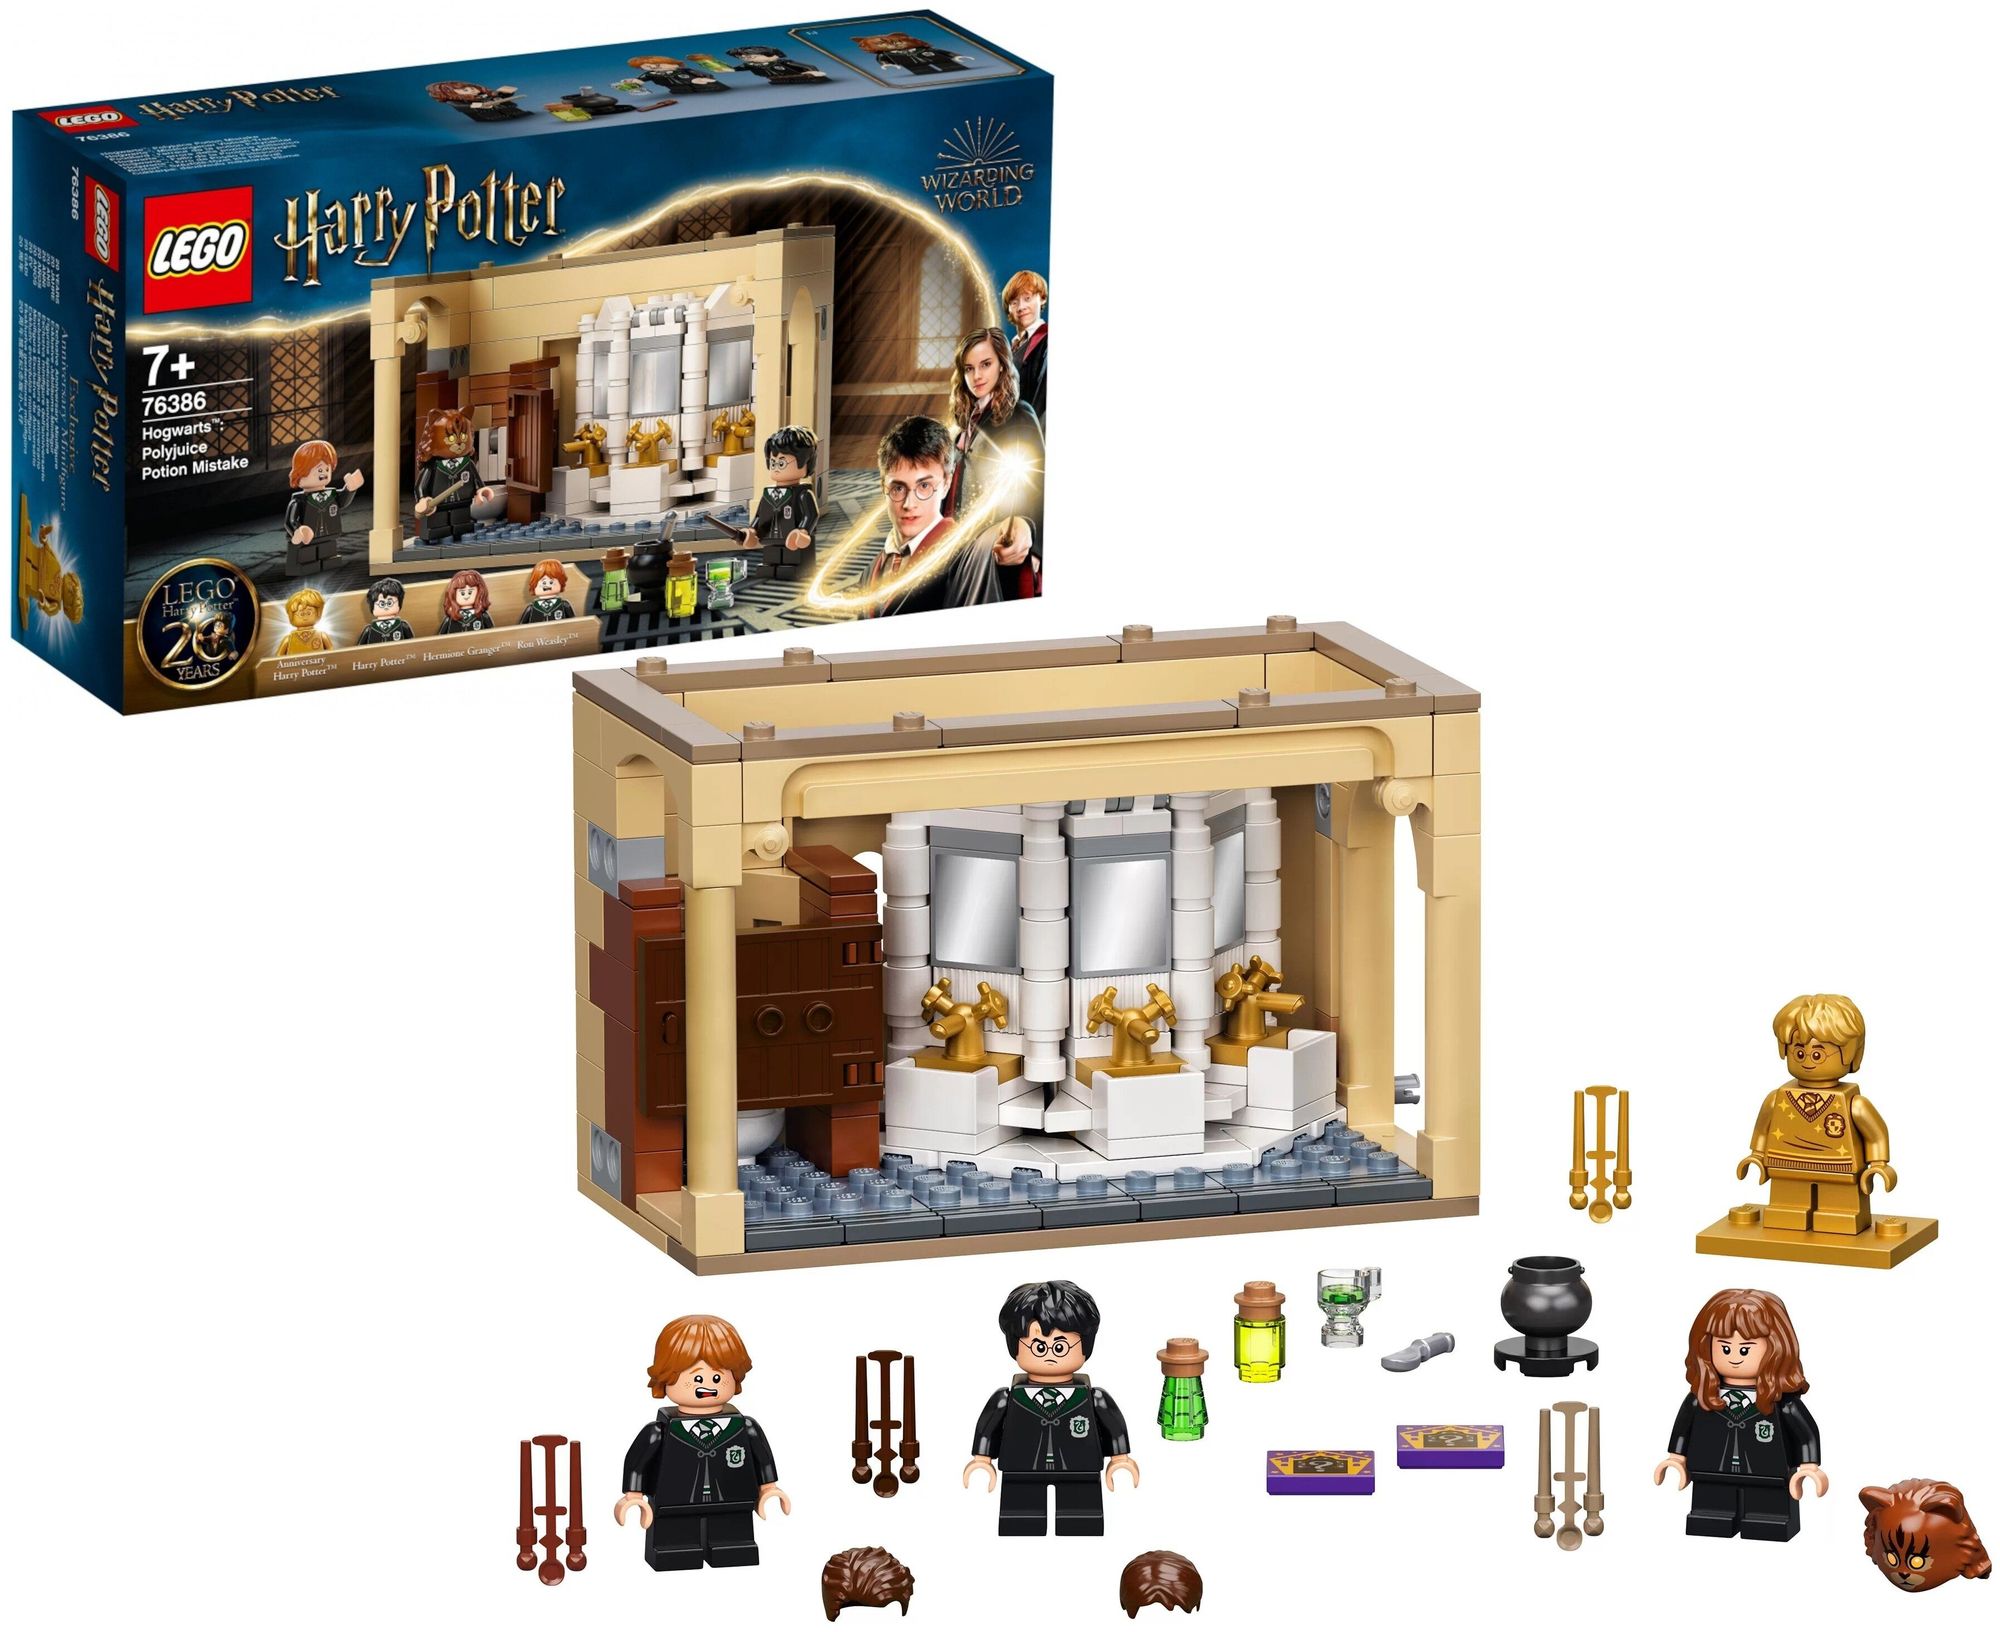 Конструктор Lego Harry Potter Hogwarts: Polyjuice Potion Mistake пластик (76386) конструктор lego harry potter 76386 хогвартс ошибка с оборотным зельем